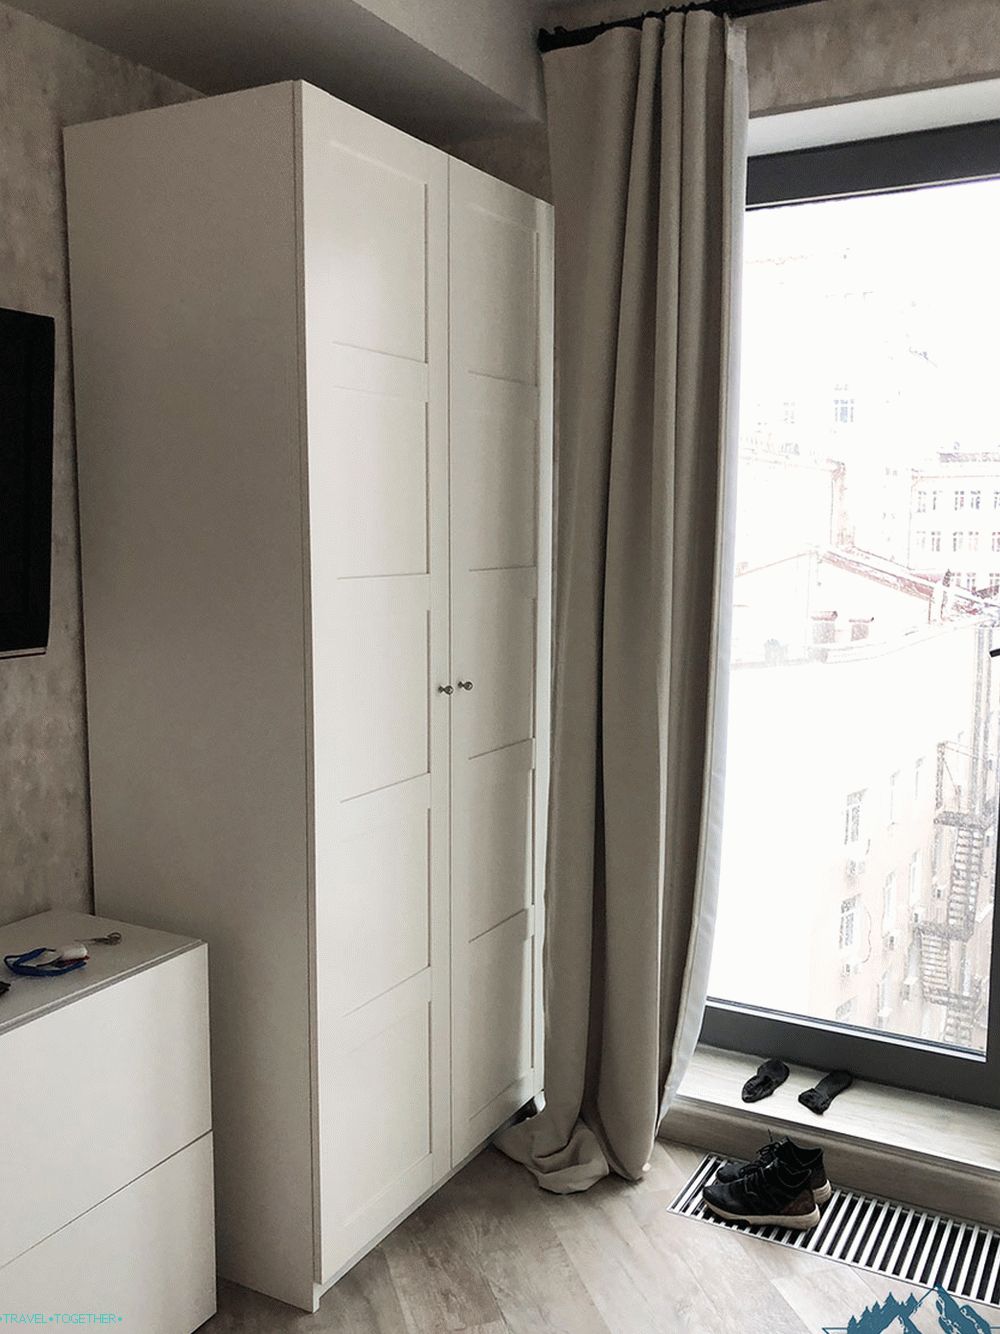 Airbnb - bývanie v Moskve